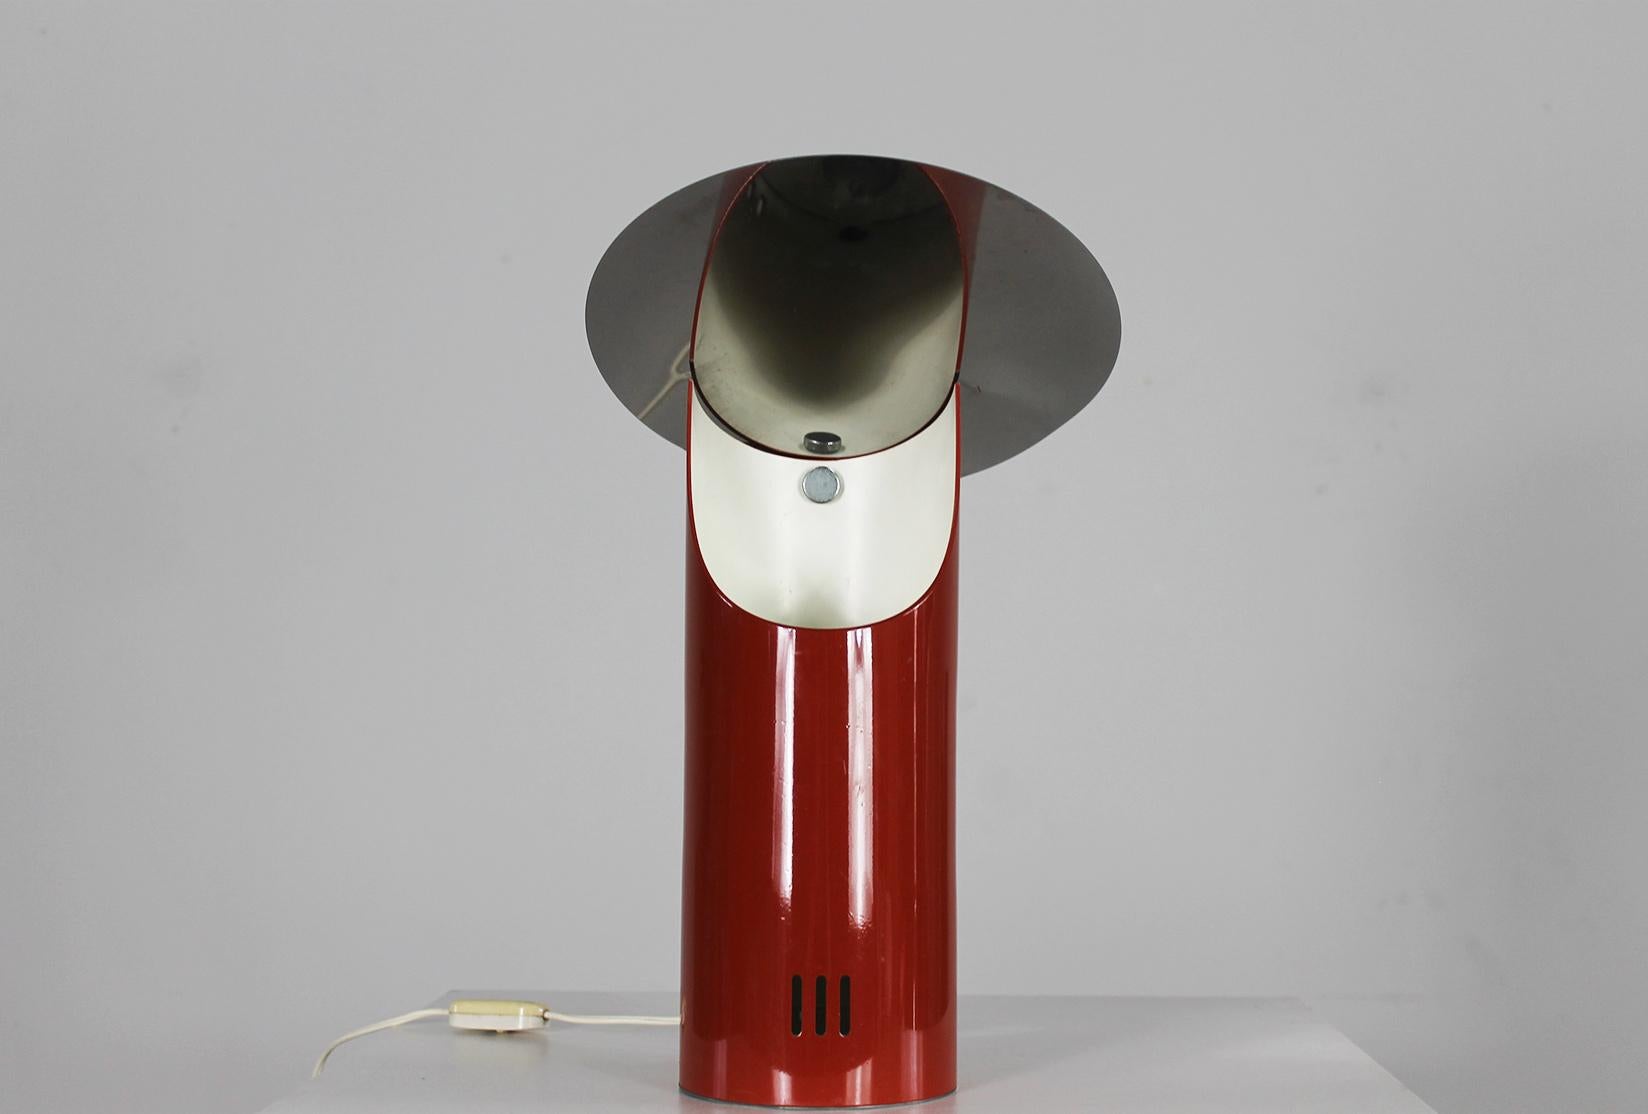 Lampe de table en acier inoxydable laqué rouge produite par Studio Steele dans les années 1970 en Italie.